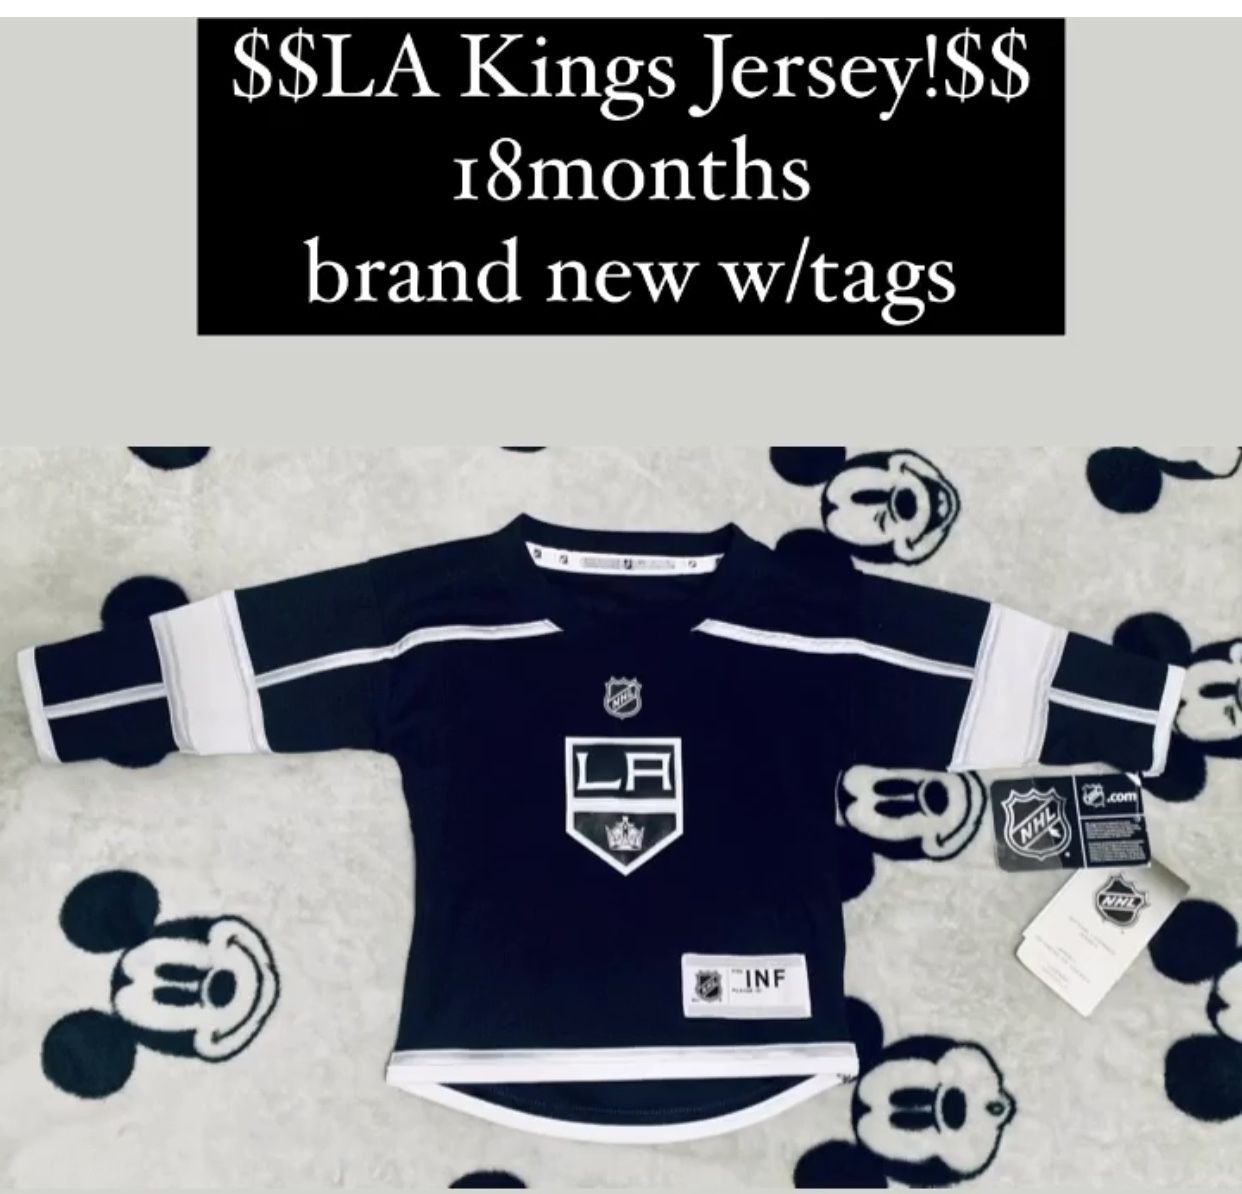 la kings jersey sale